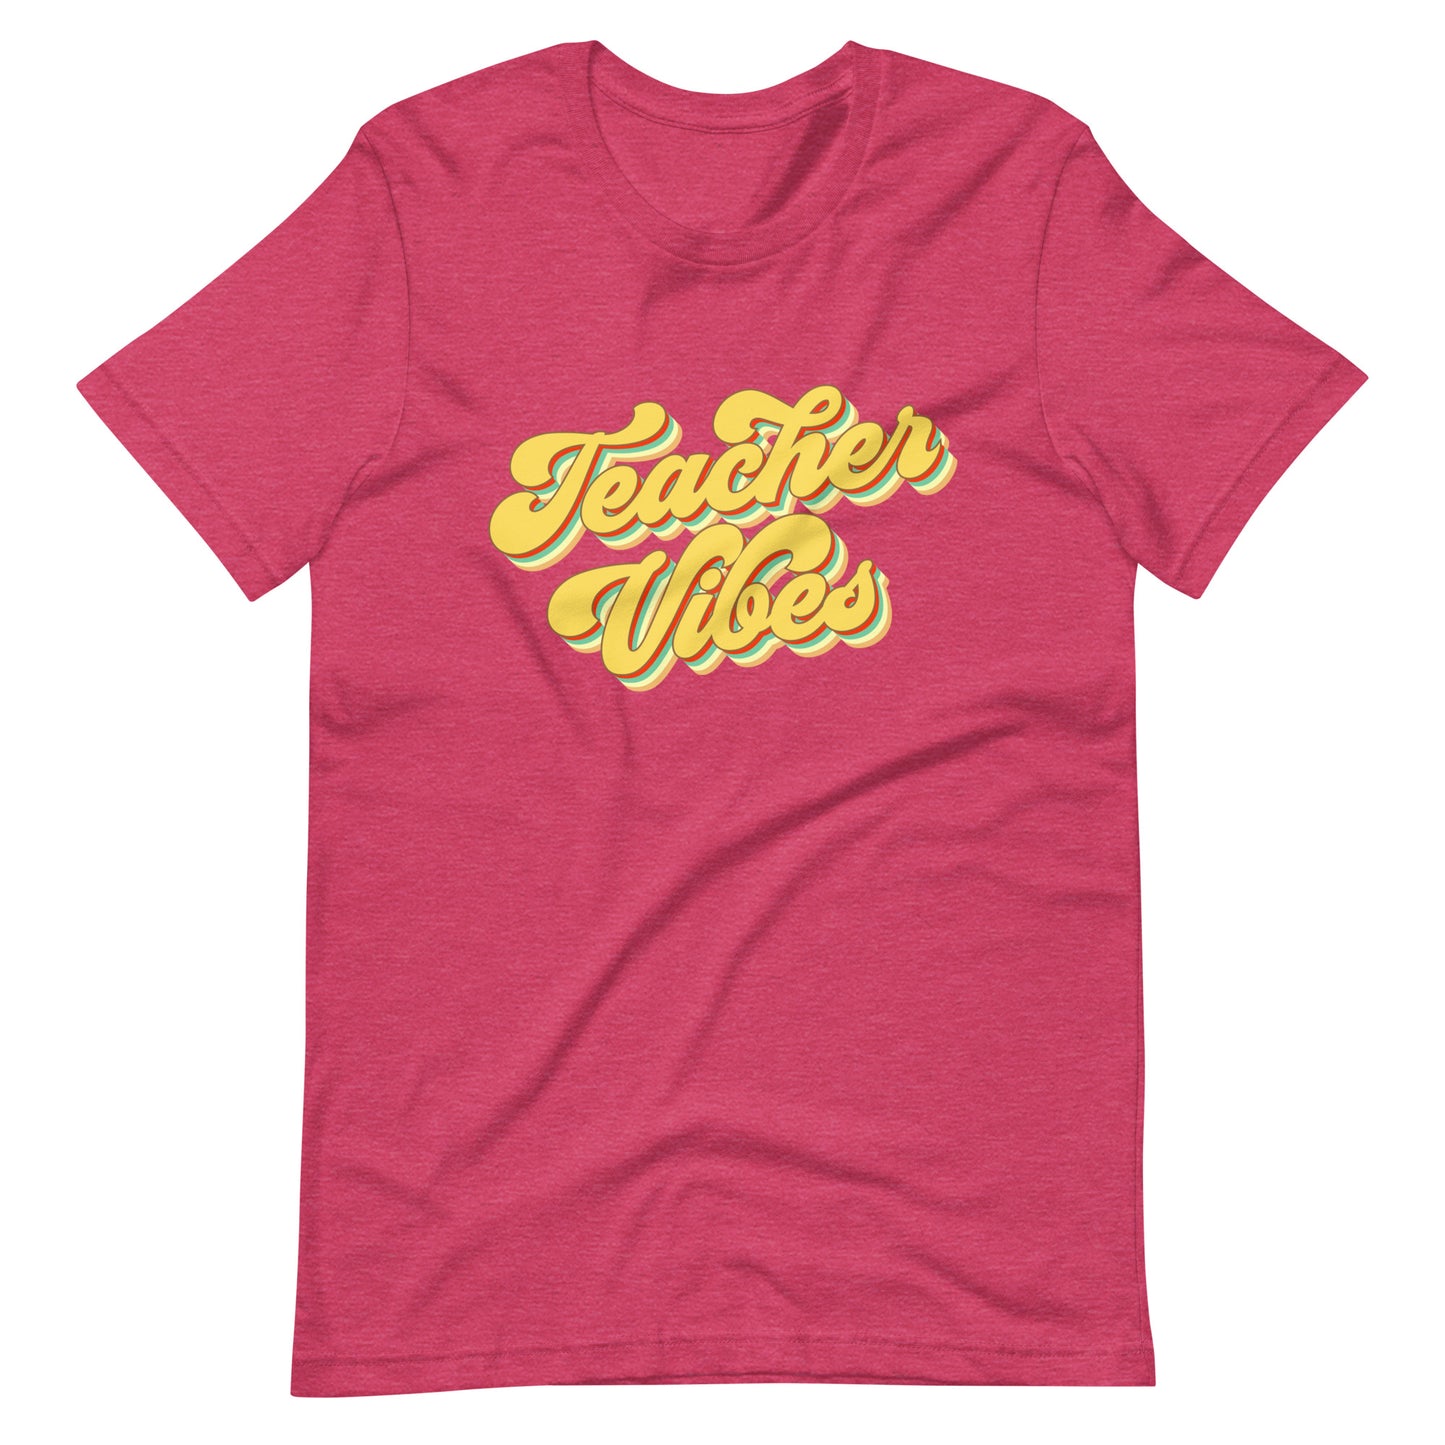 Teacher Vibes - T-Shirt